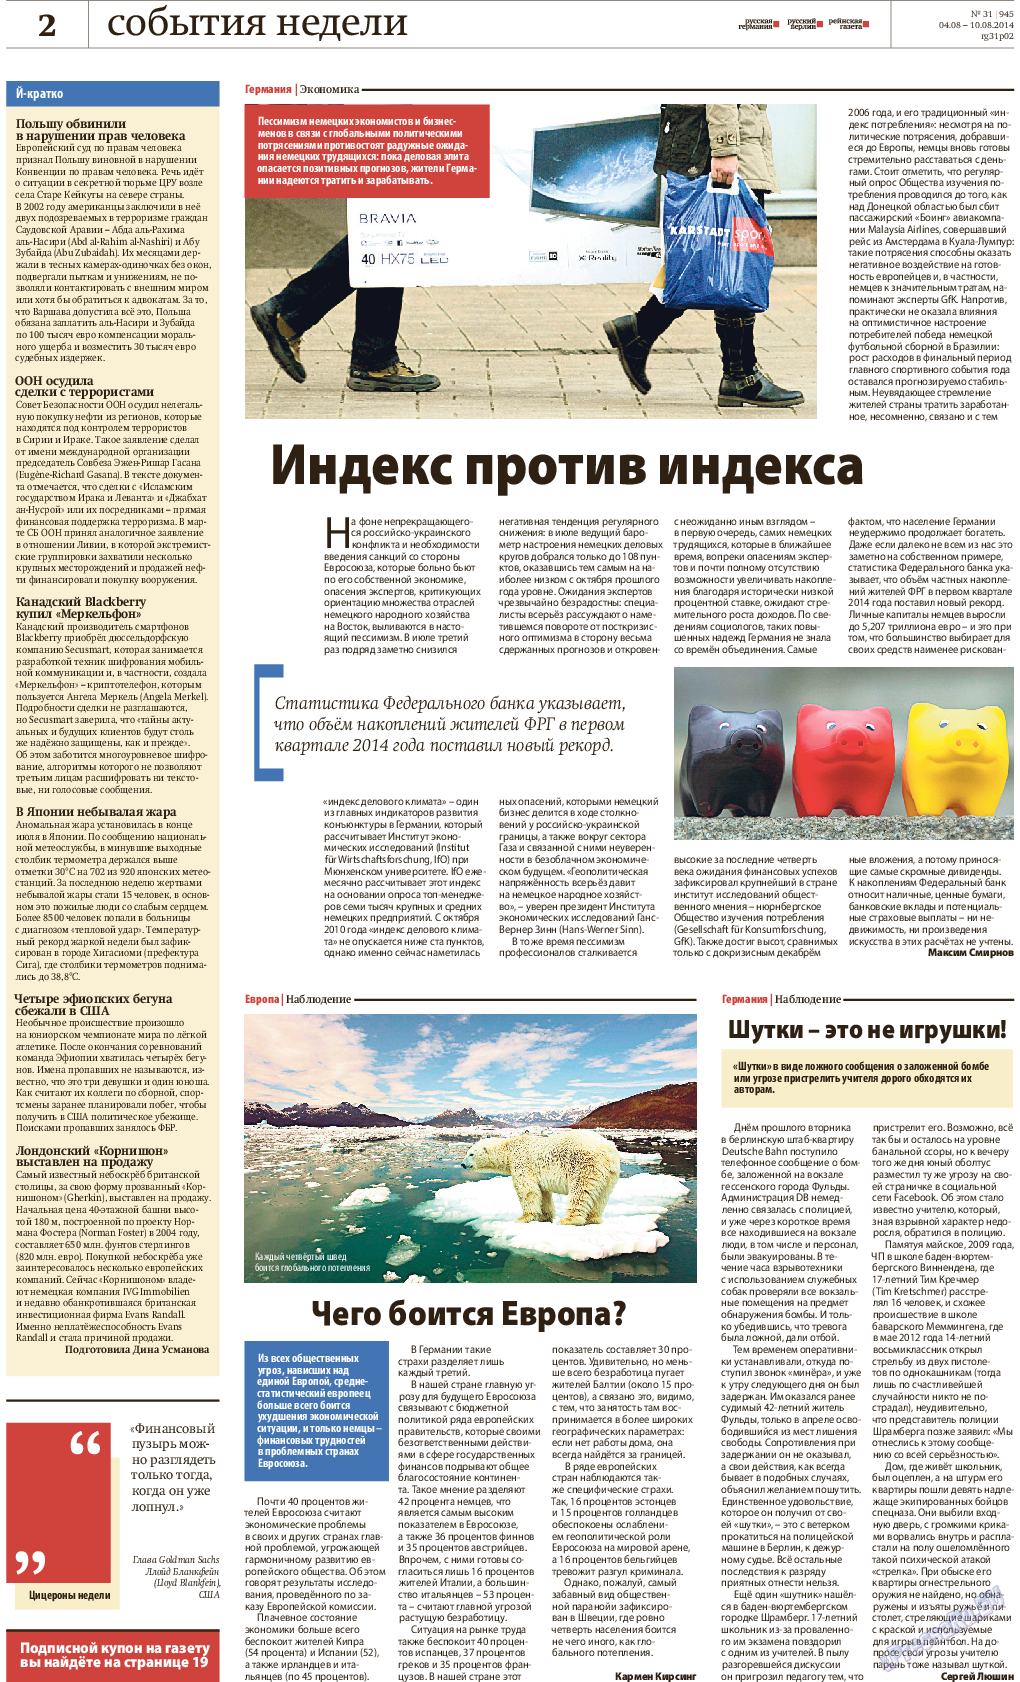 Рейнская газета, газета. 2014 №31 стр.2